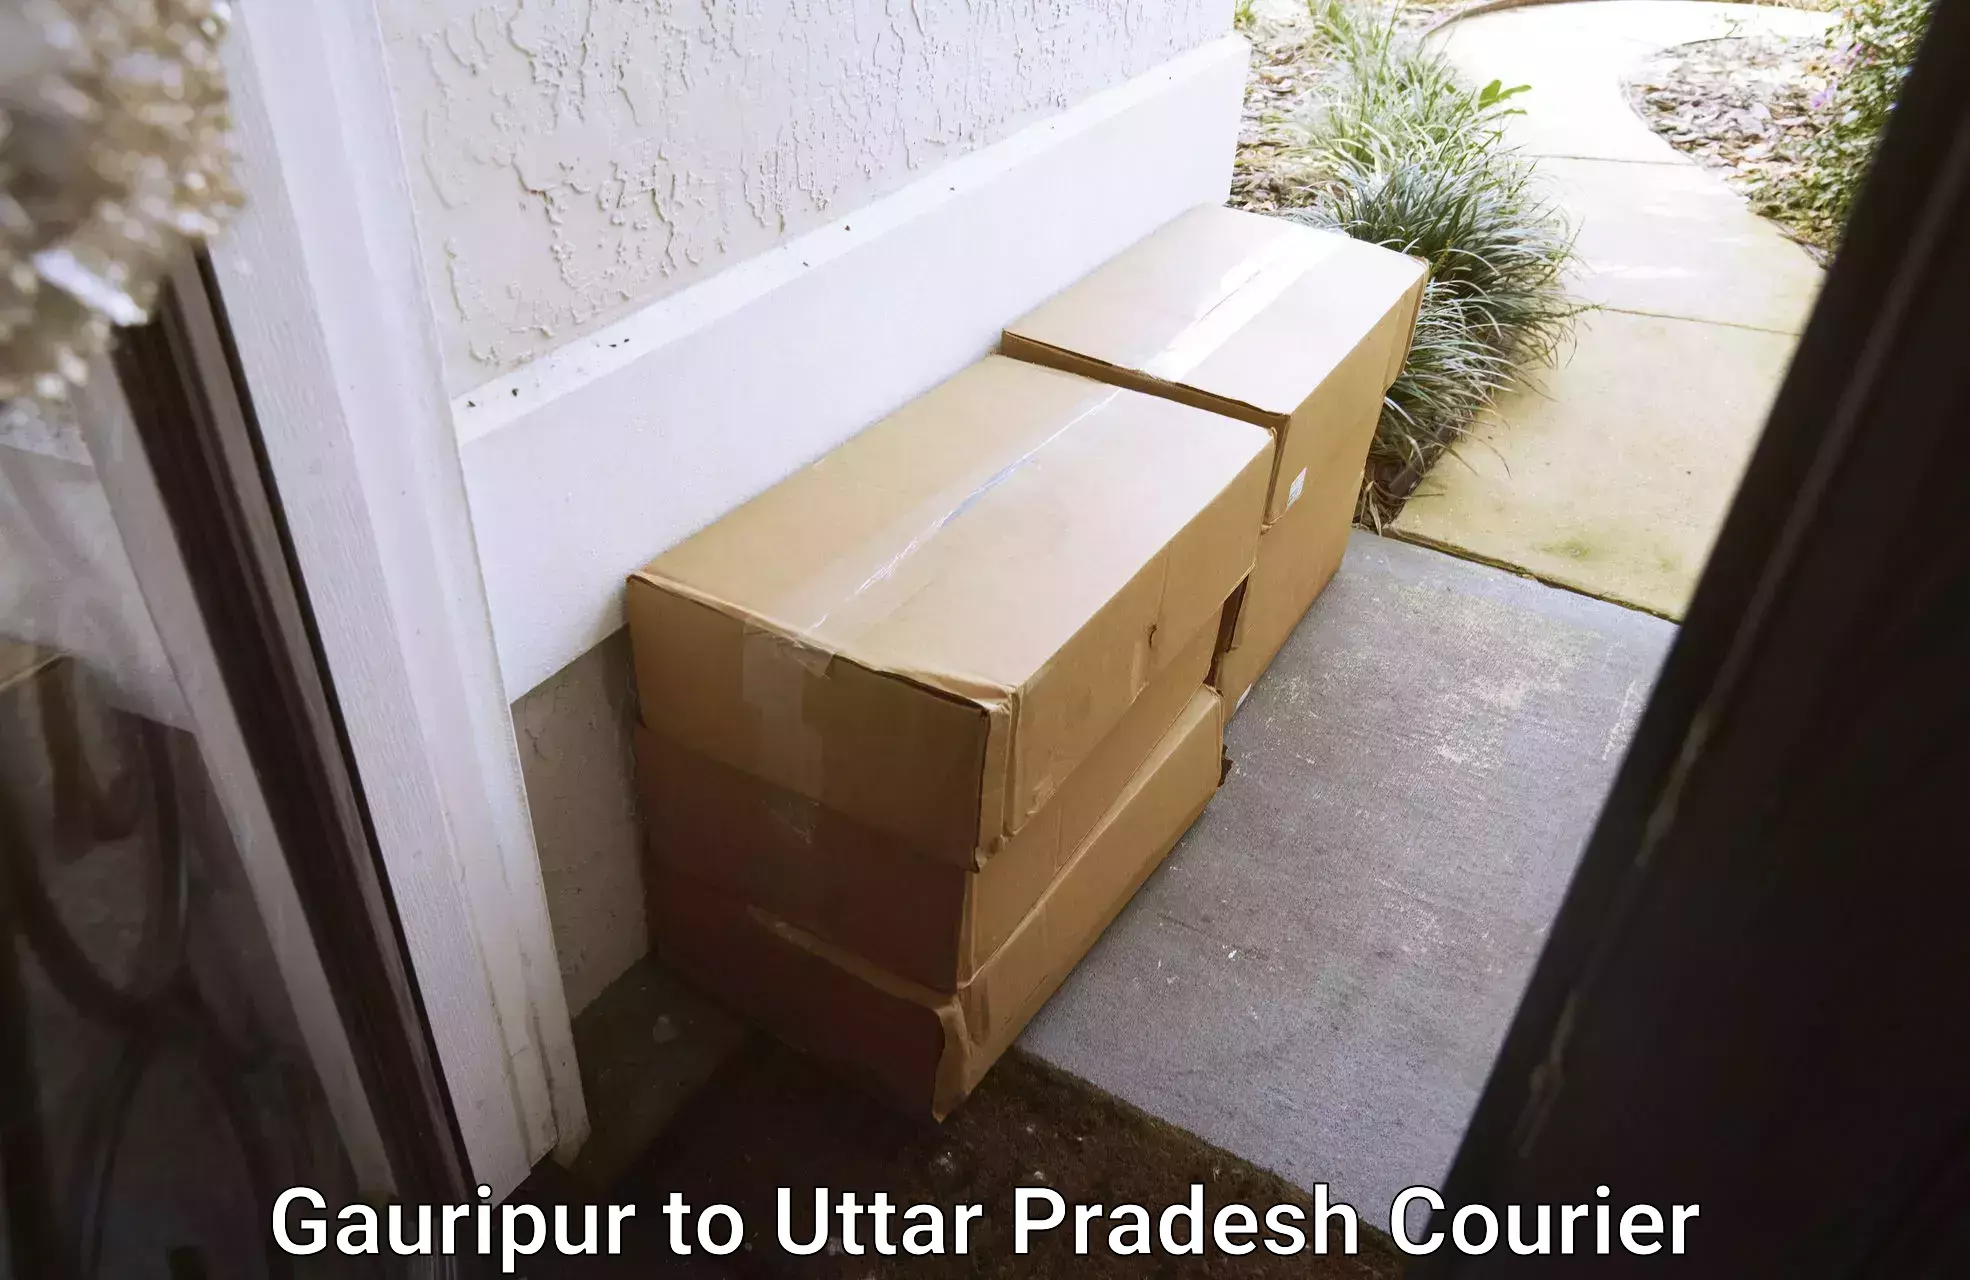 Full-service household moving Gauripur to Uttar Pradesh